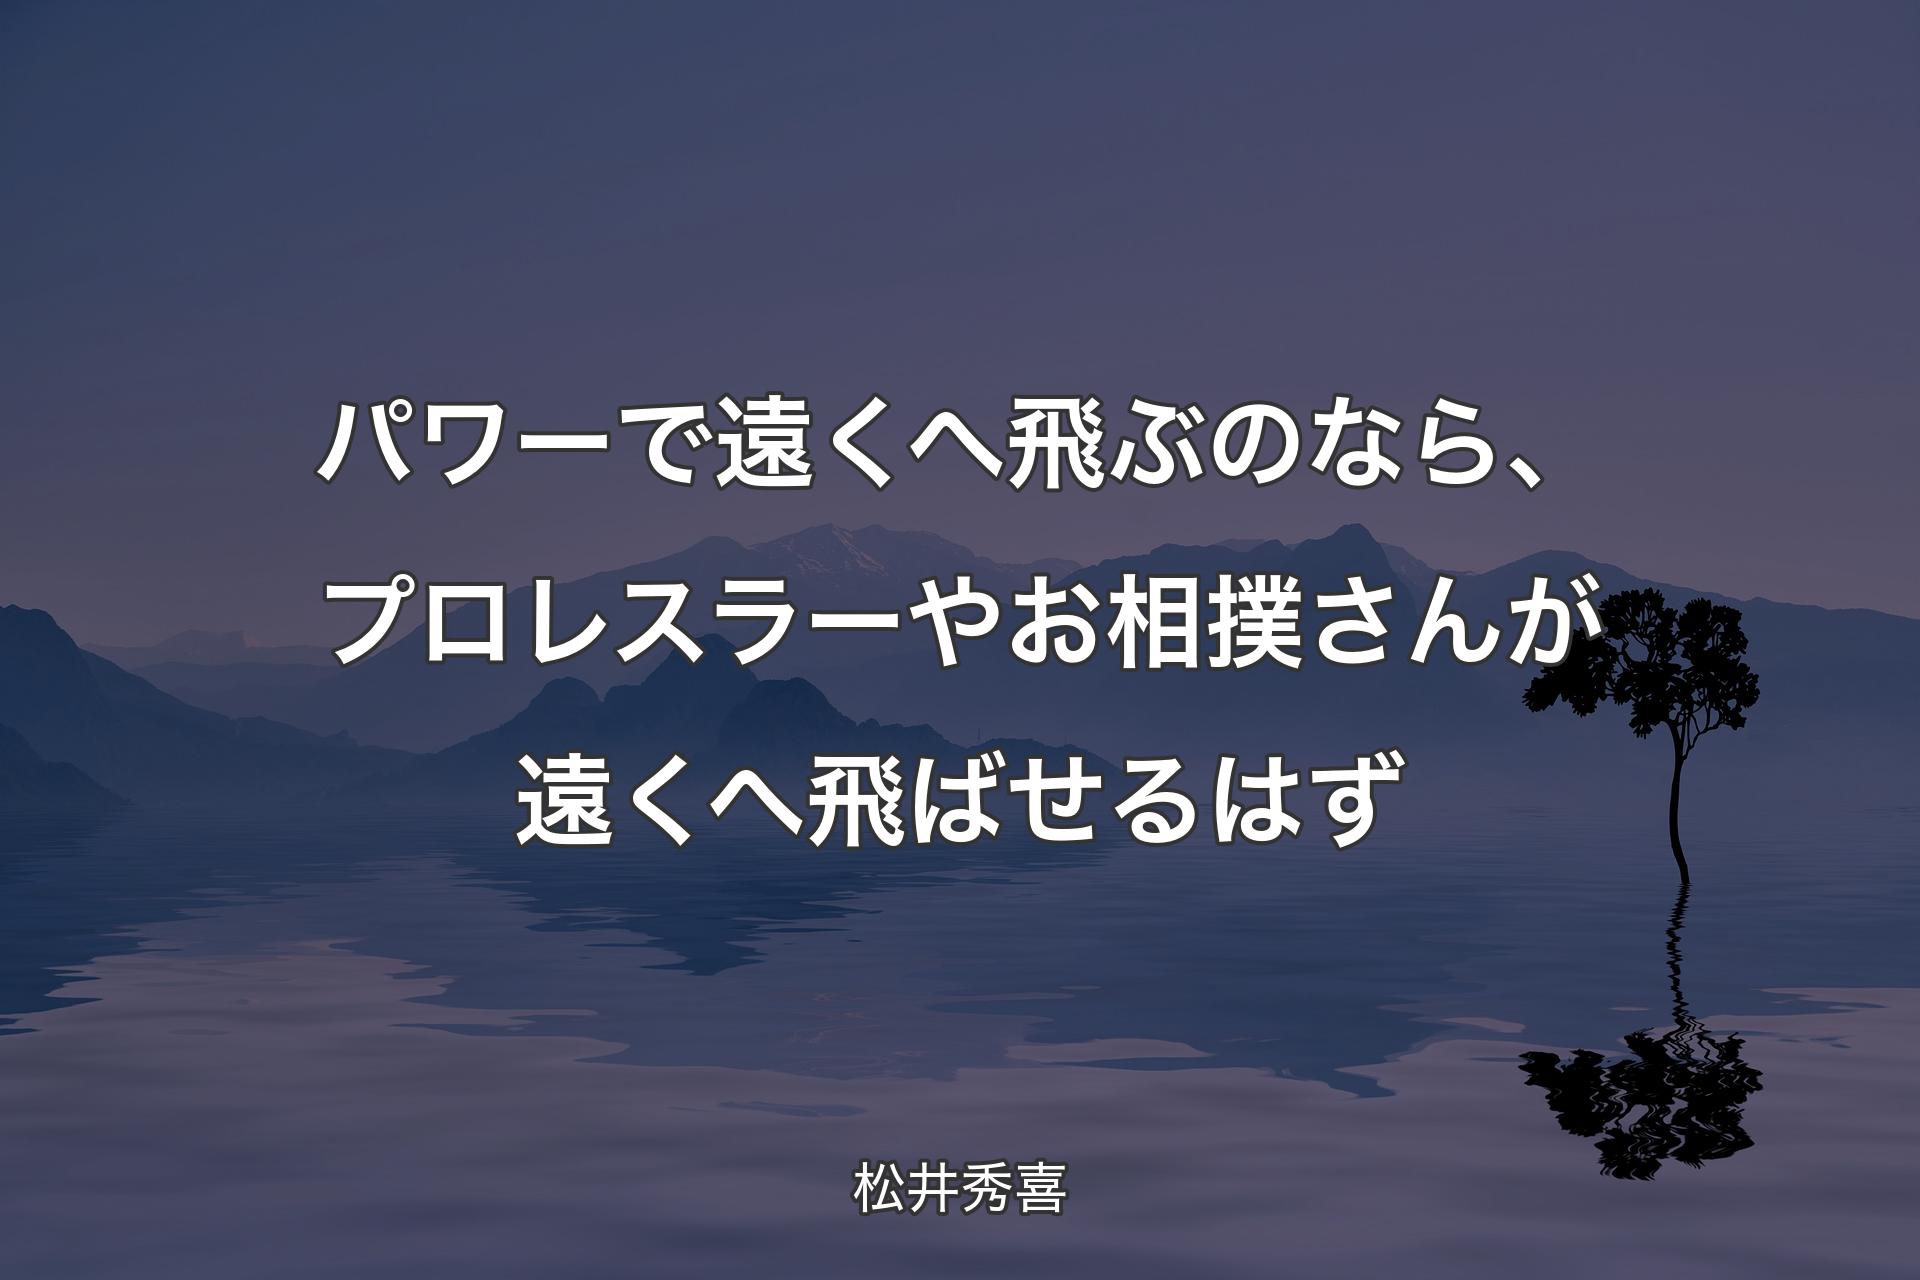 【背景4】パワーで遠くへ飛ぶのなら、プロレスラーやお相撲さんが遠くへ飛ばせるはず - 松井秀喜